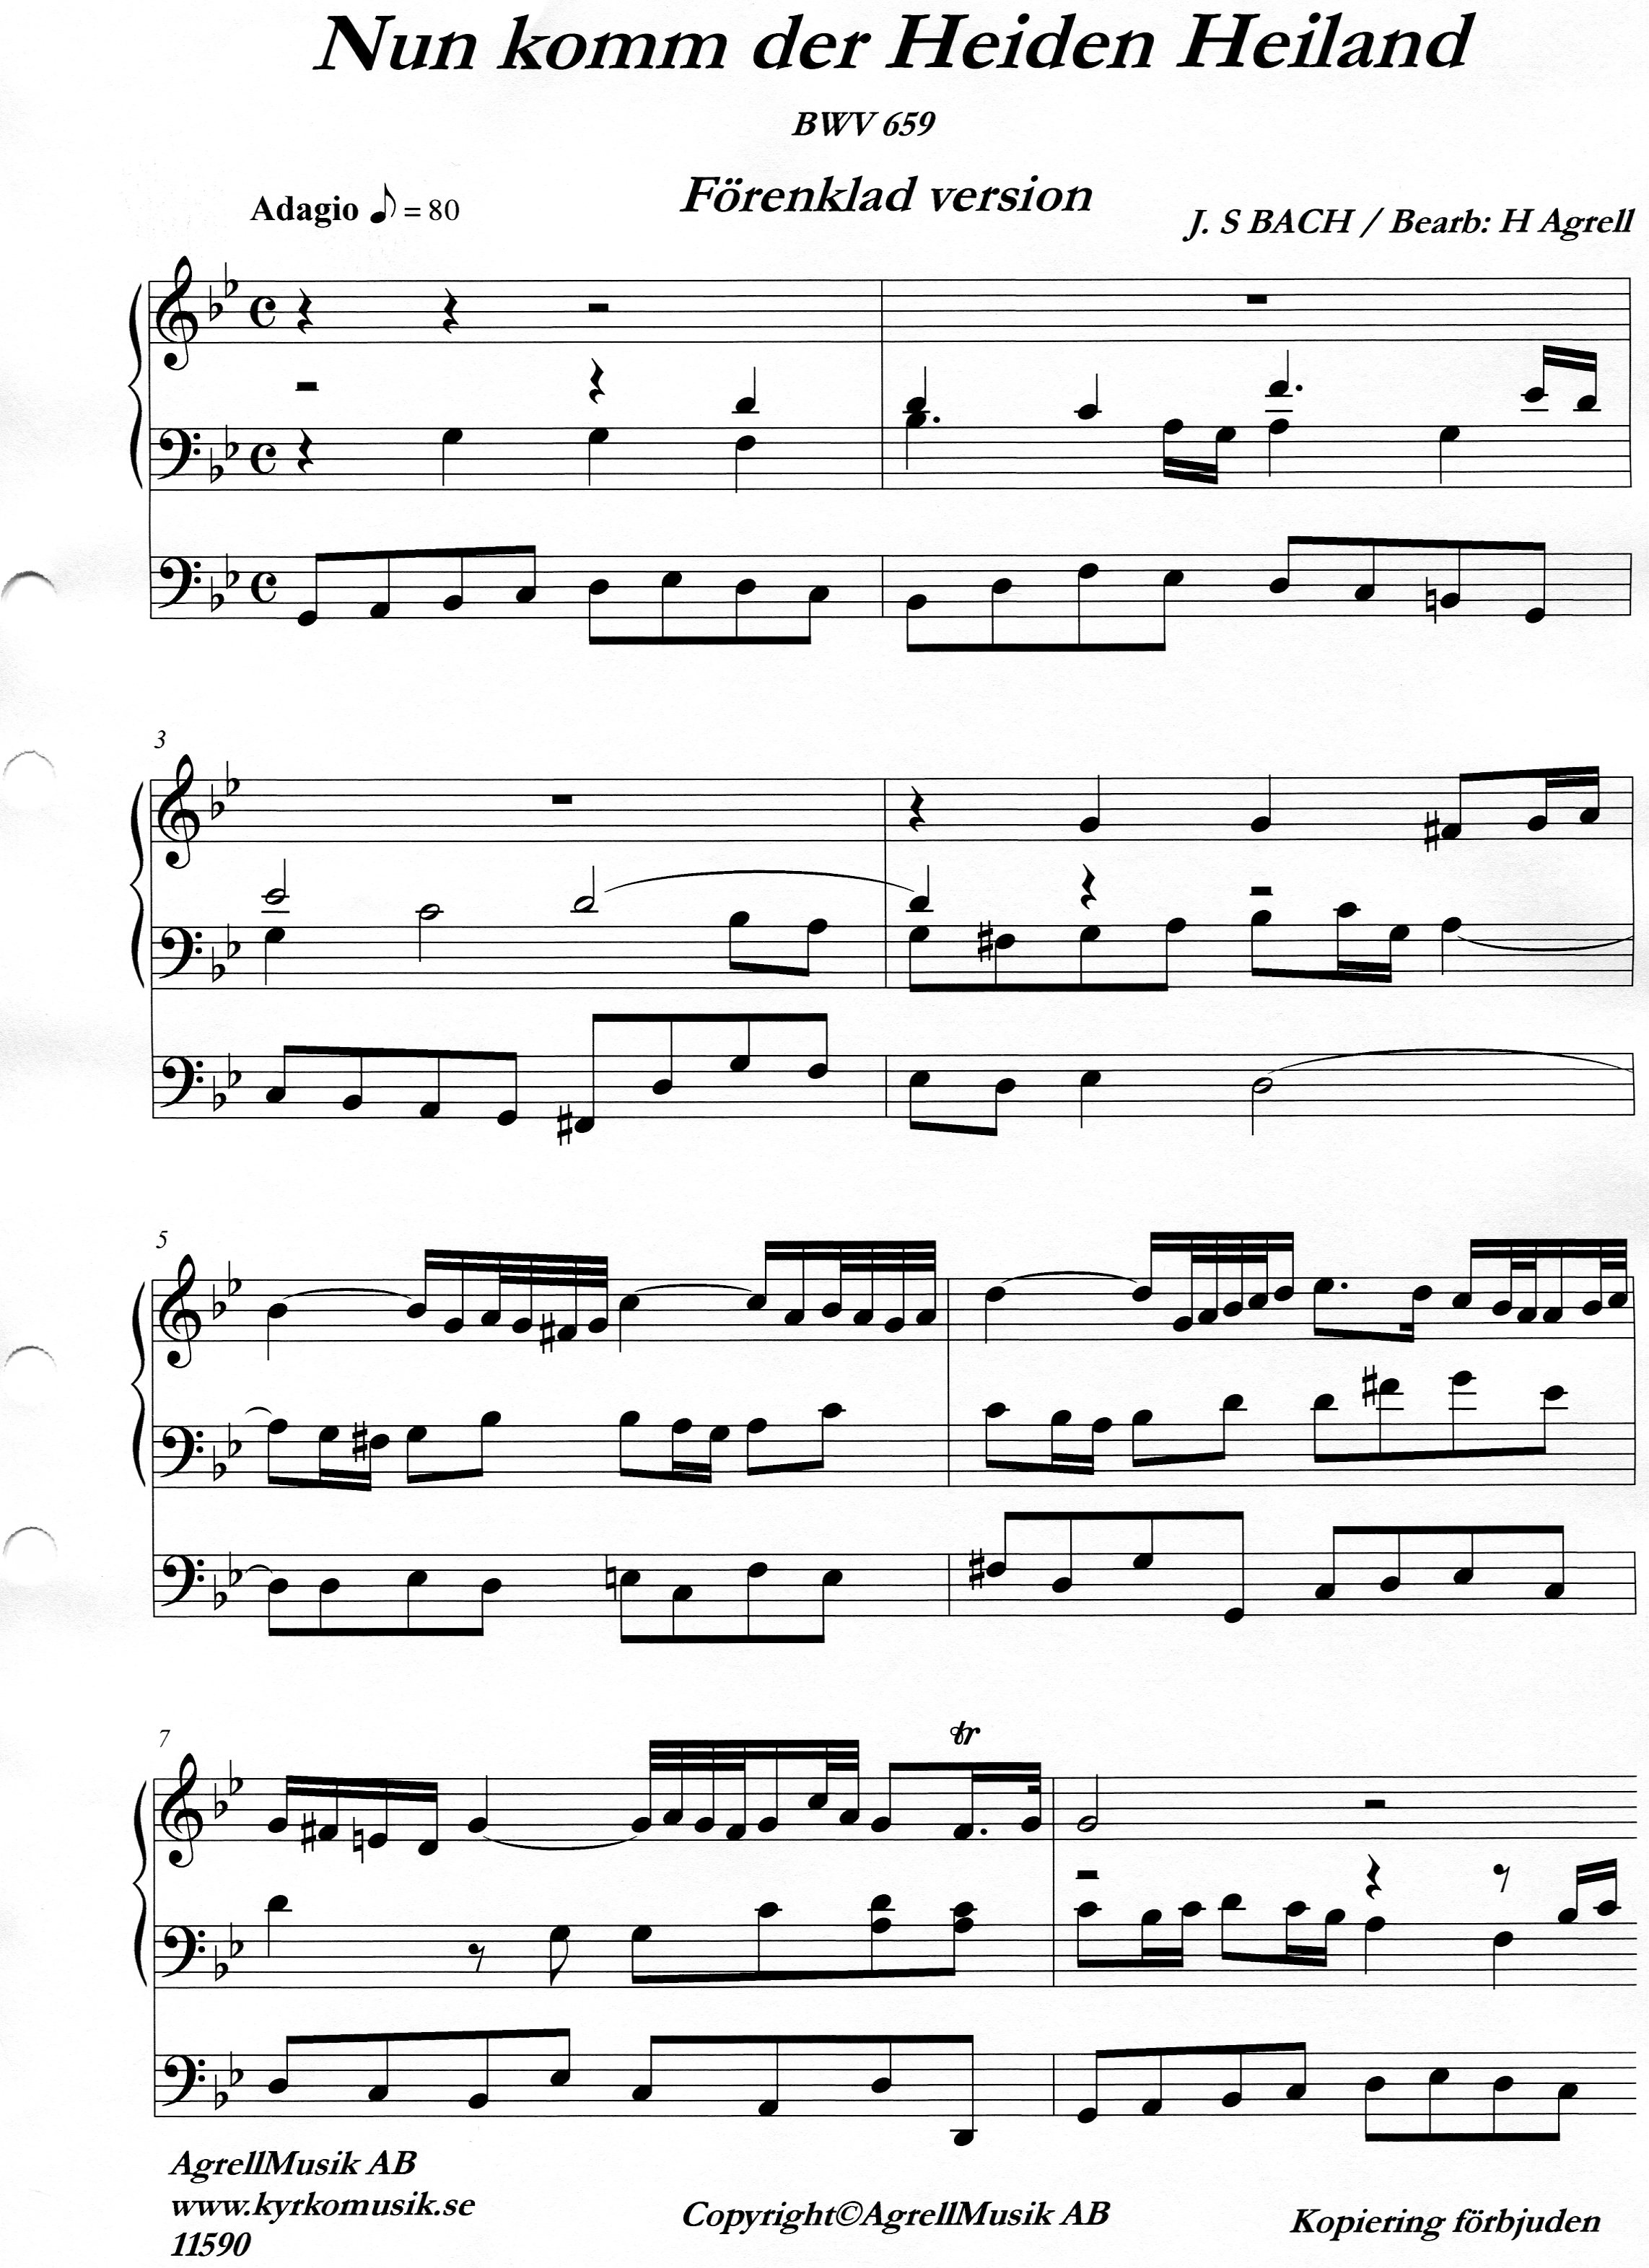 Nun komm der Heiden Heiland / BWV 659/Förenklad version / J S Bach
